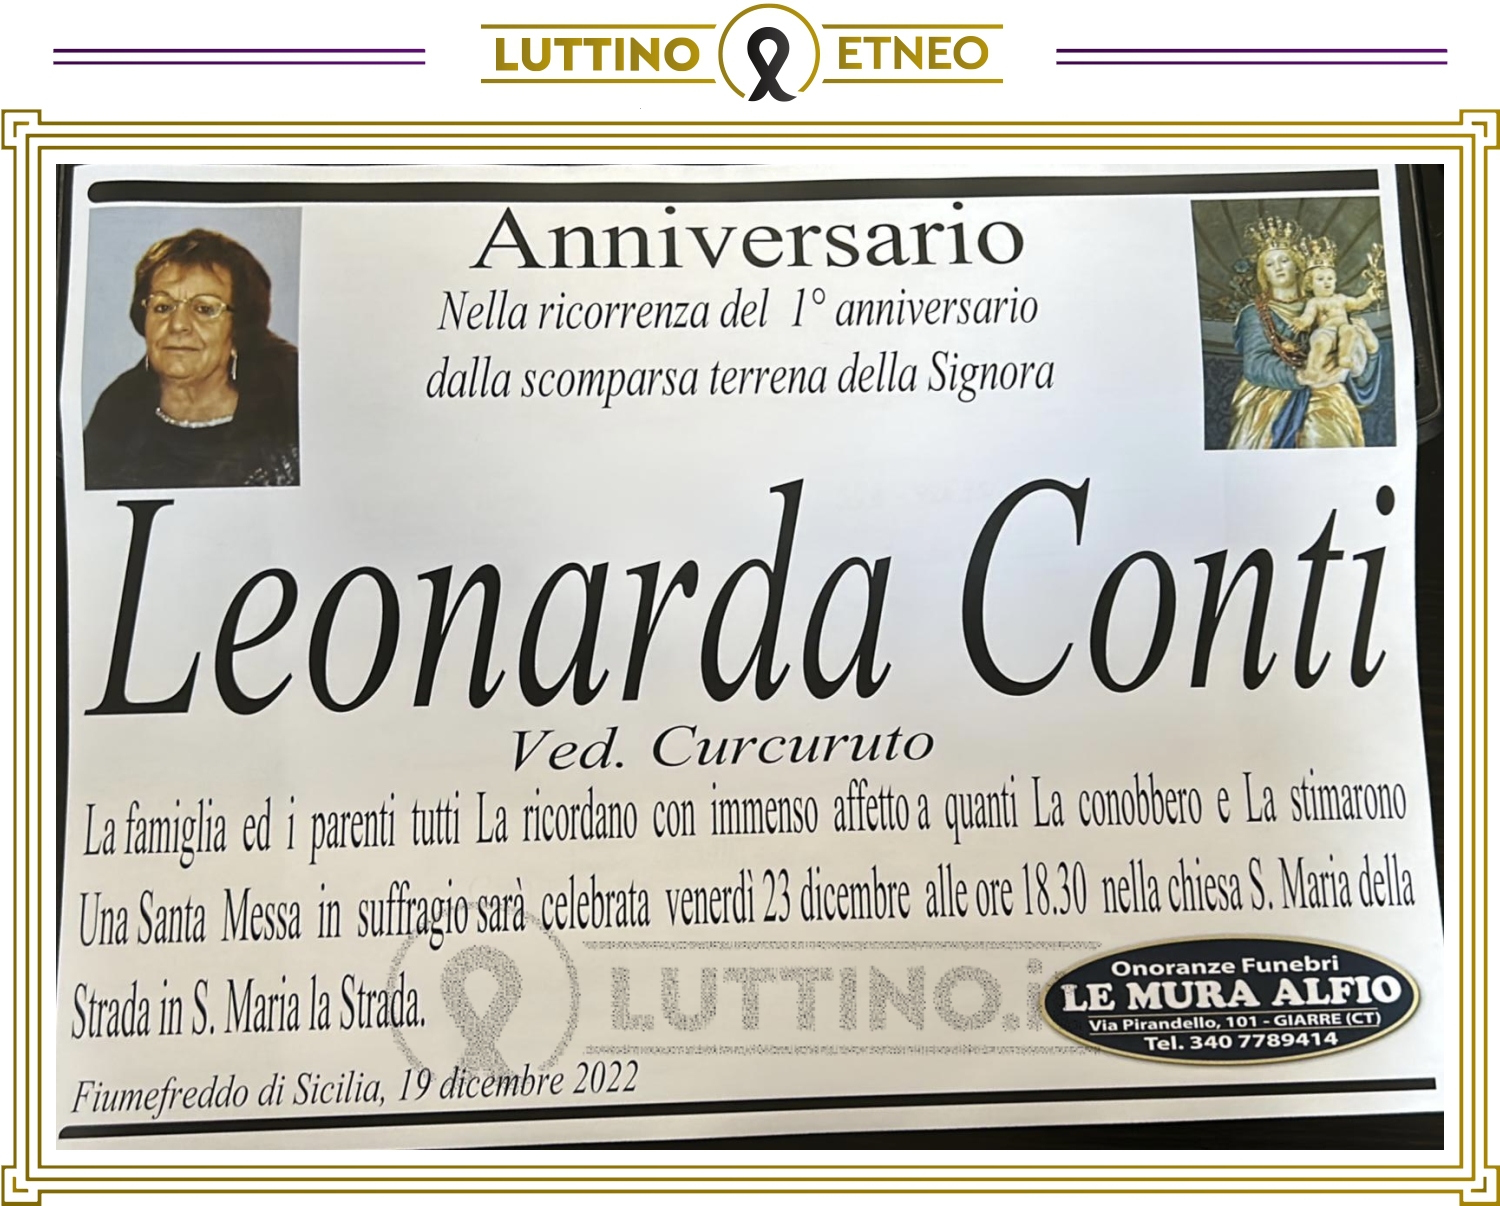 Leonarda Conti